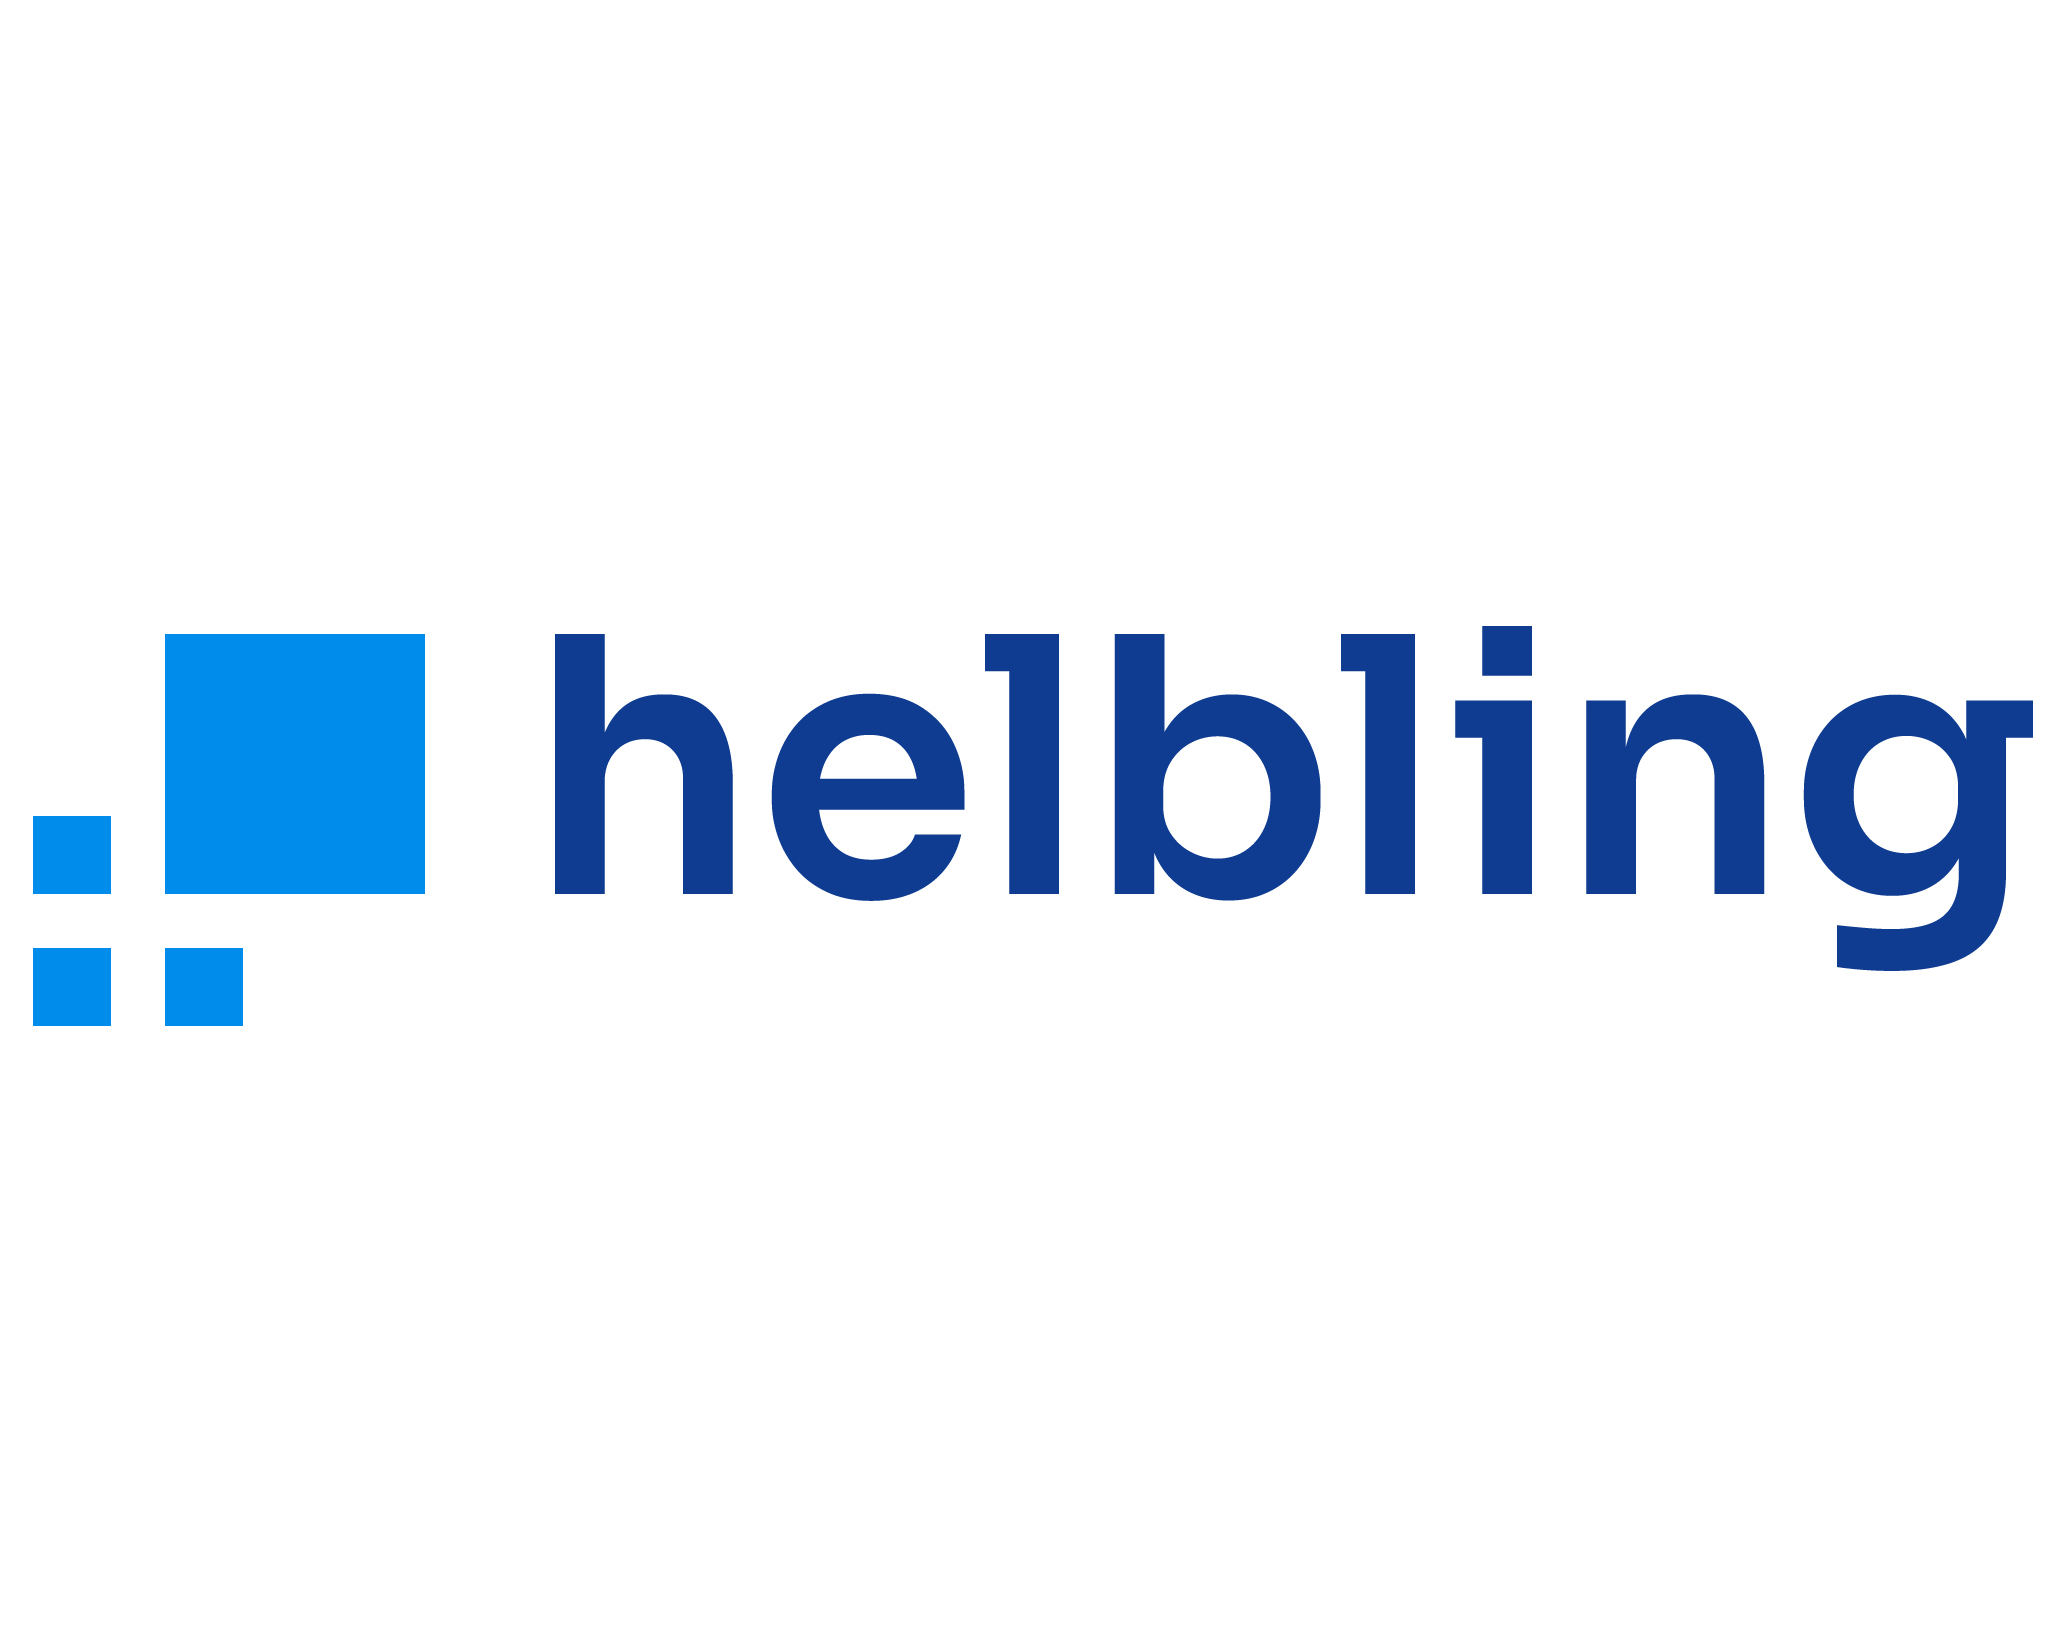 Helbling Technik Bern AG